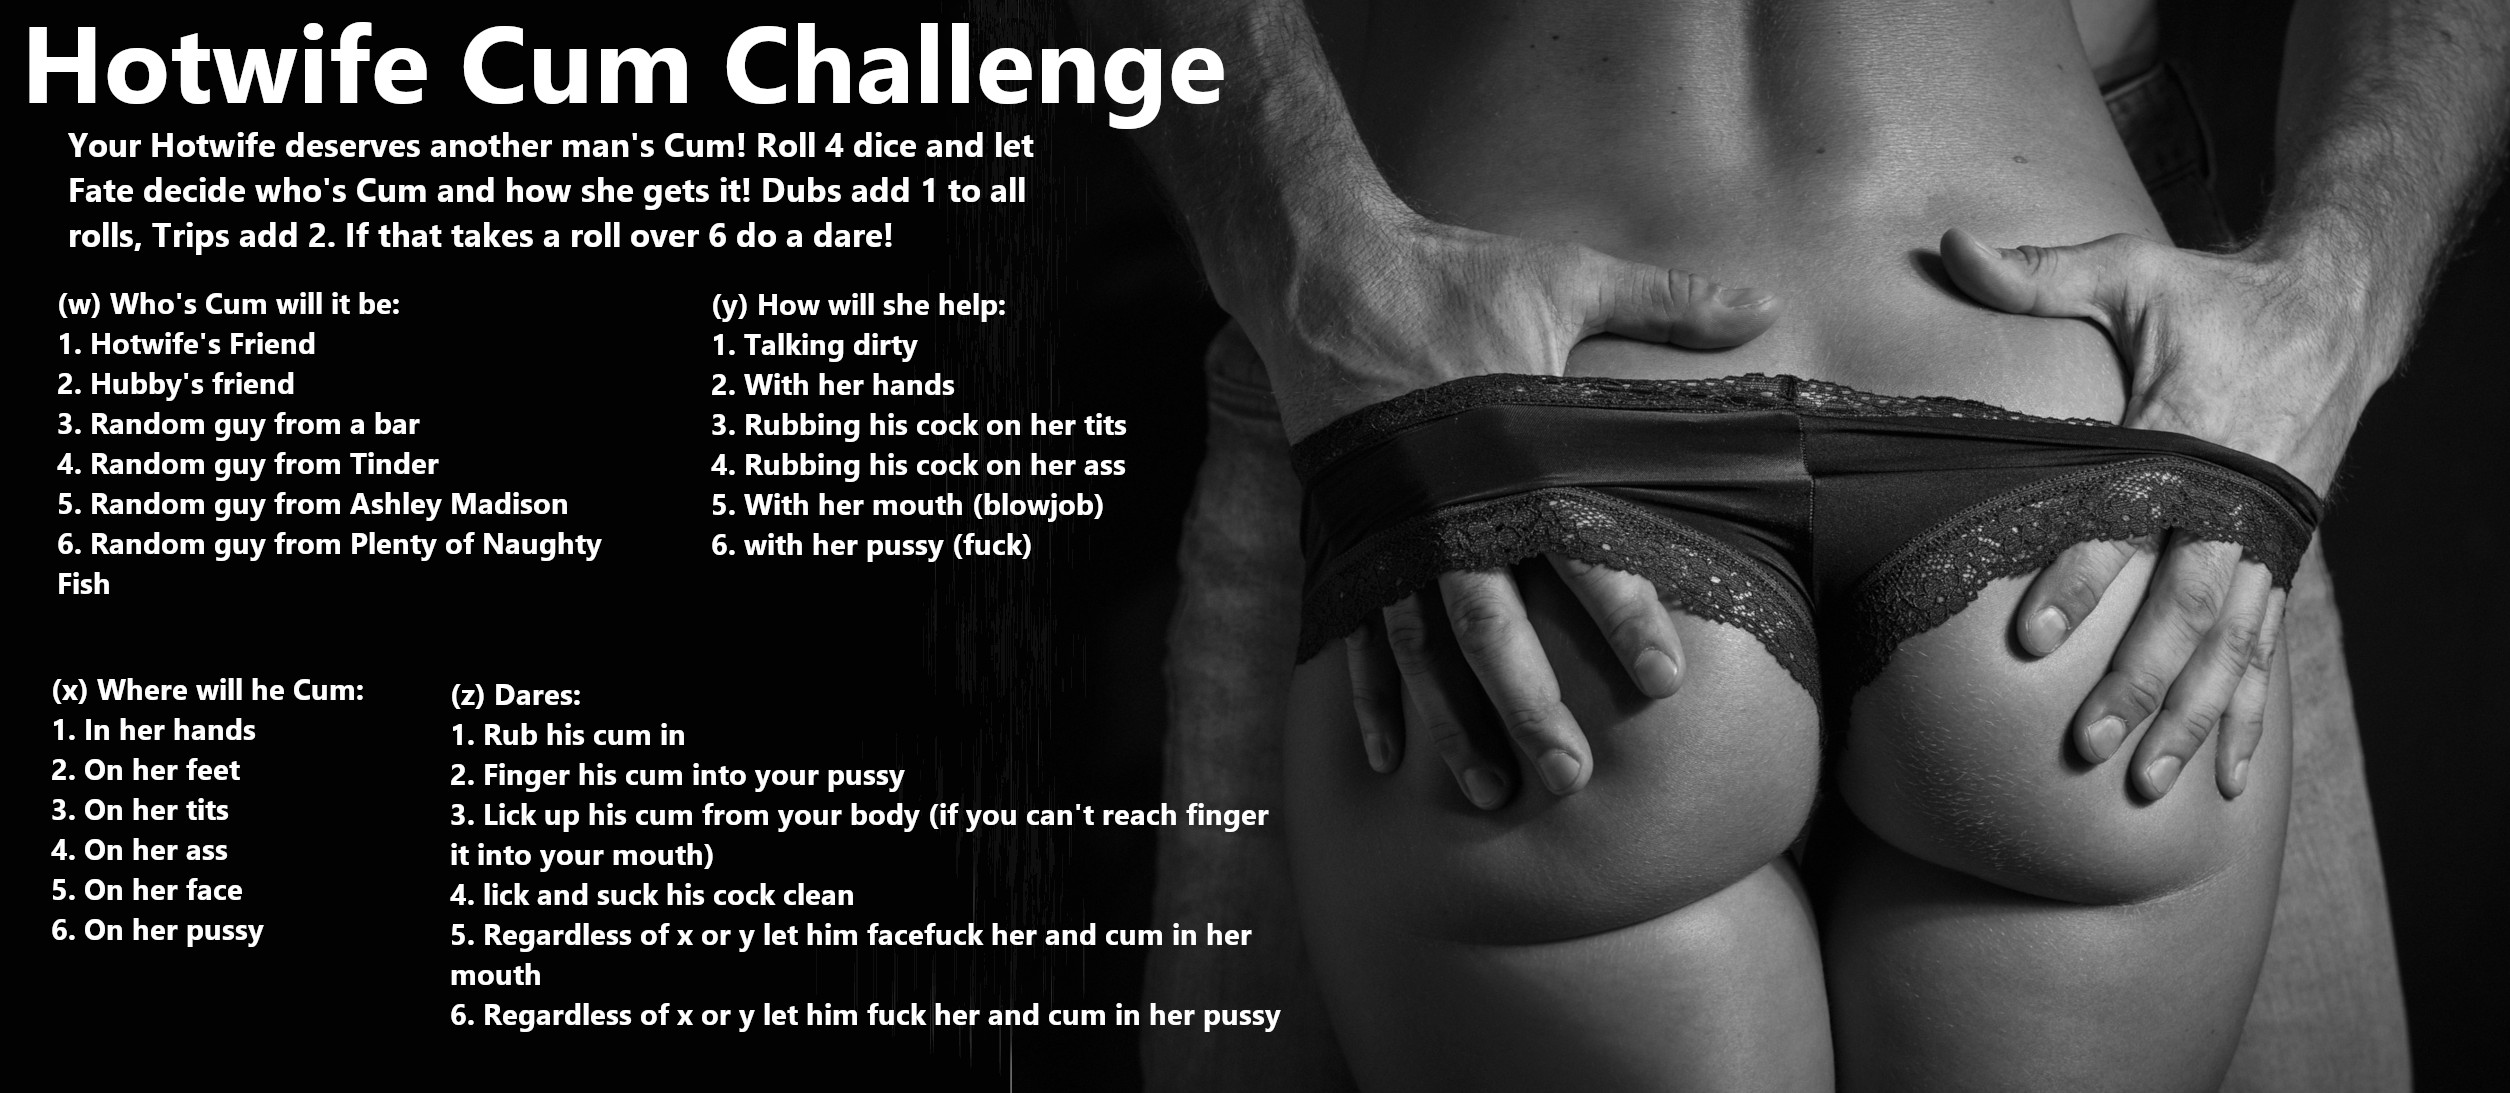 Hotwife Cum Challenge photo